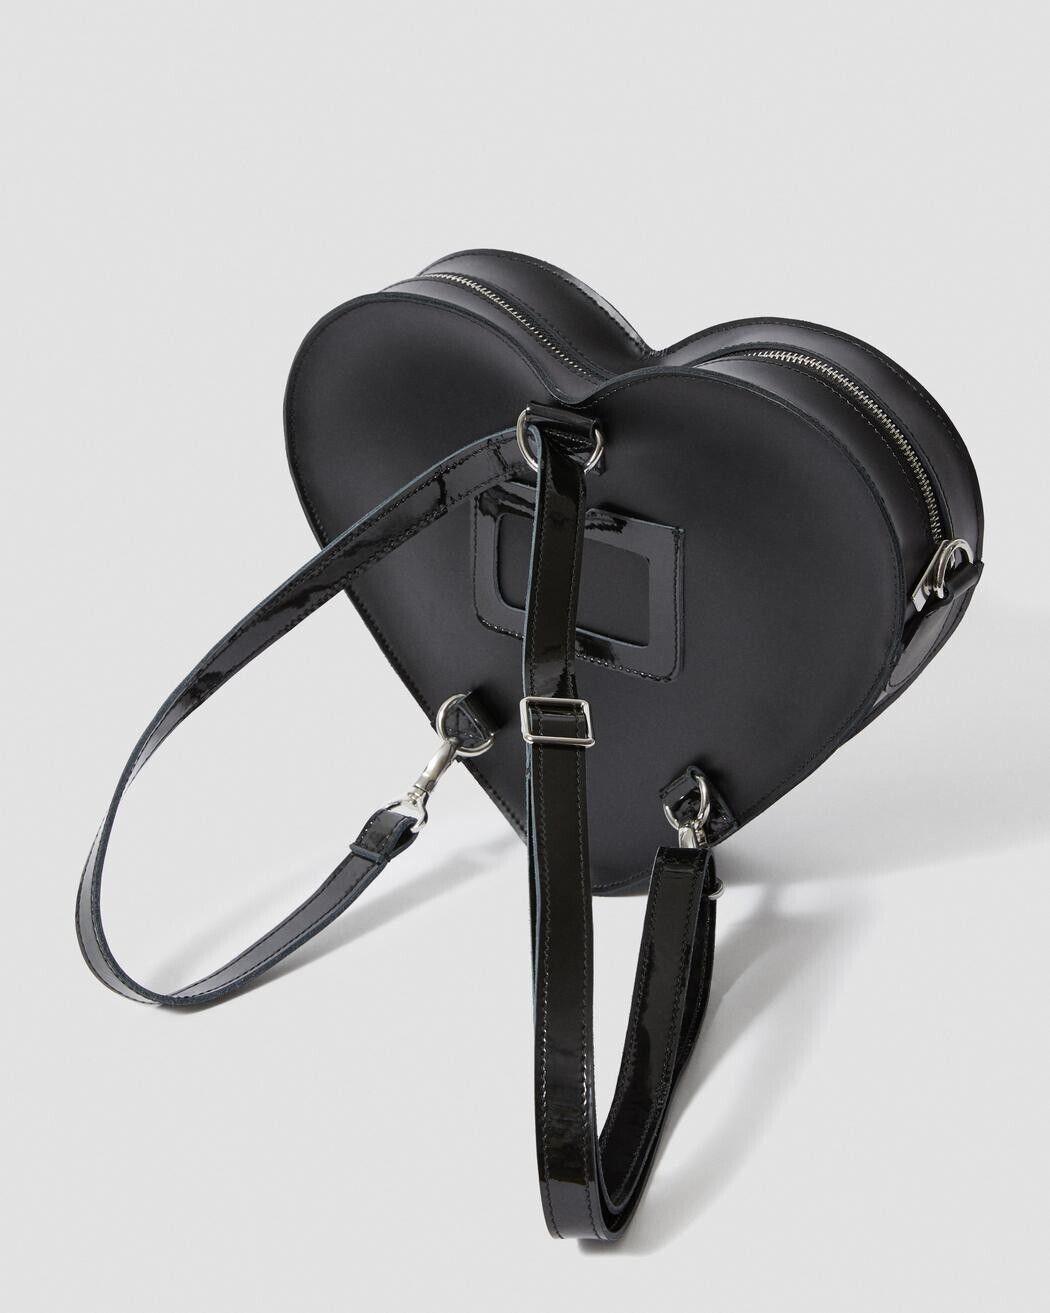 Dr. Martens Heart Bag Cross Bag Handbag Backpack Black Leather - SVNYFancy